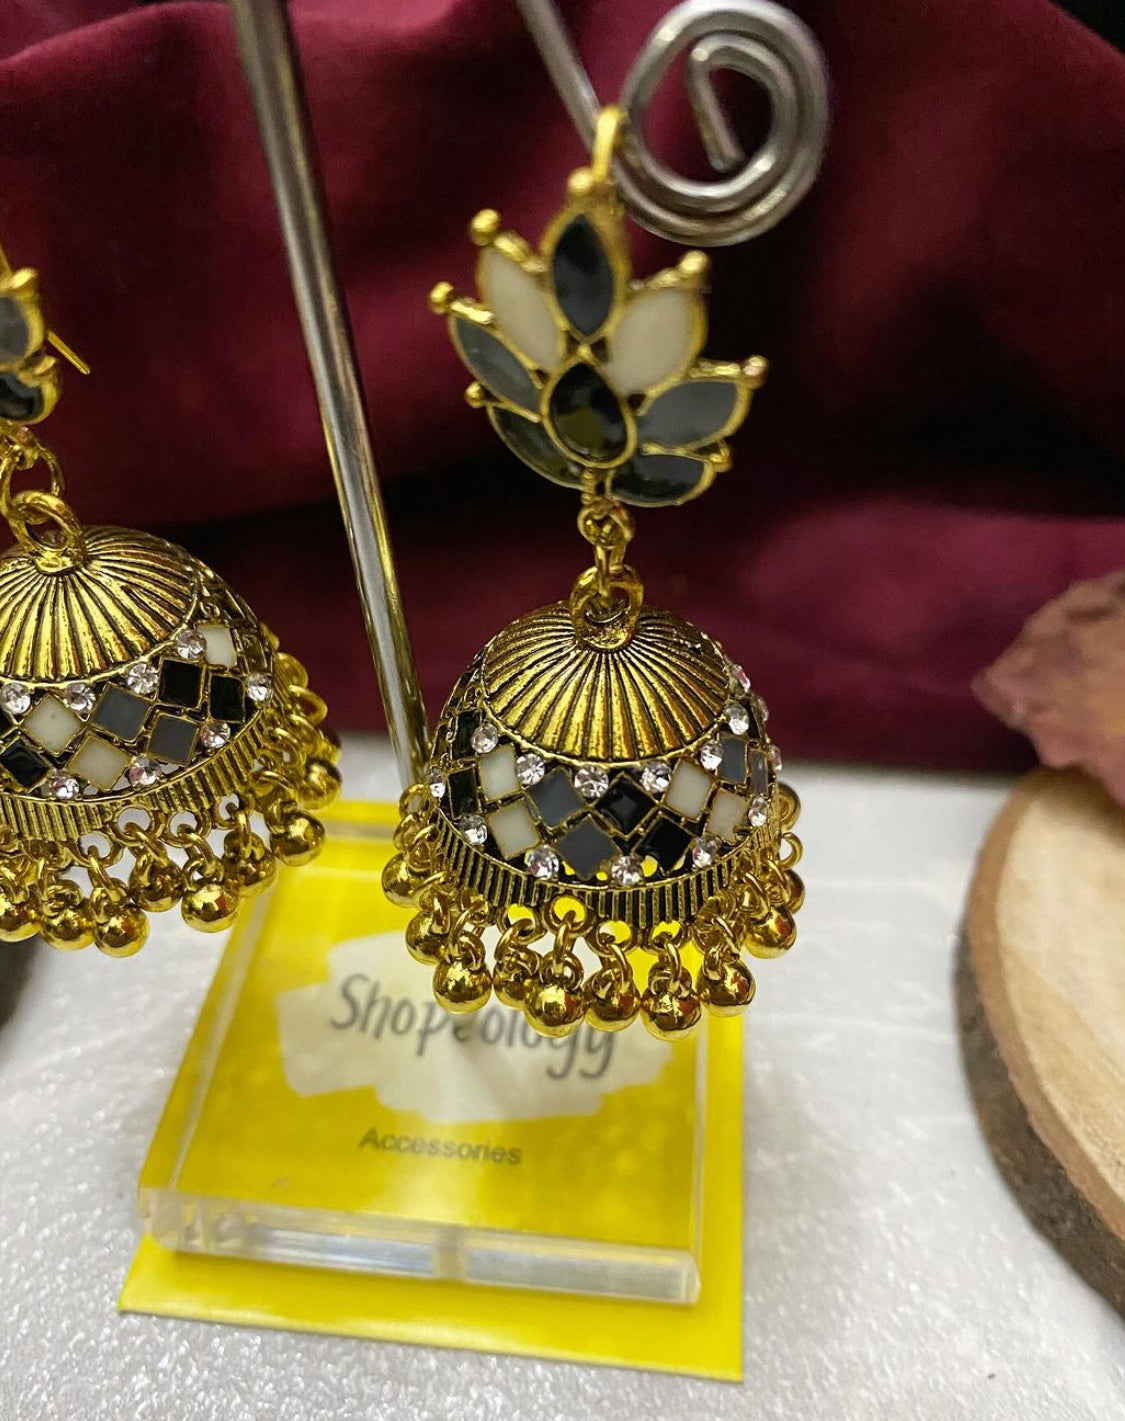 Petal jhumka earring - Shopeology